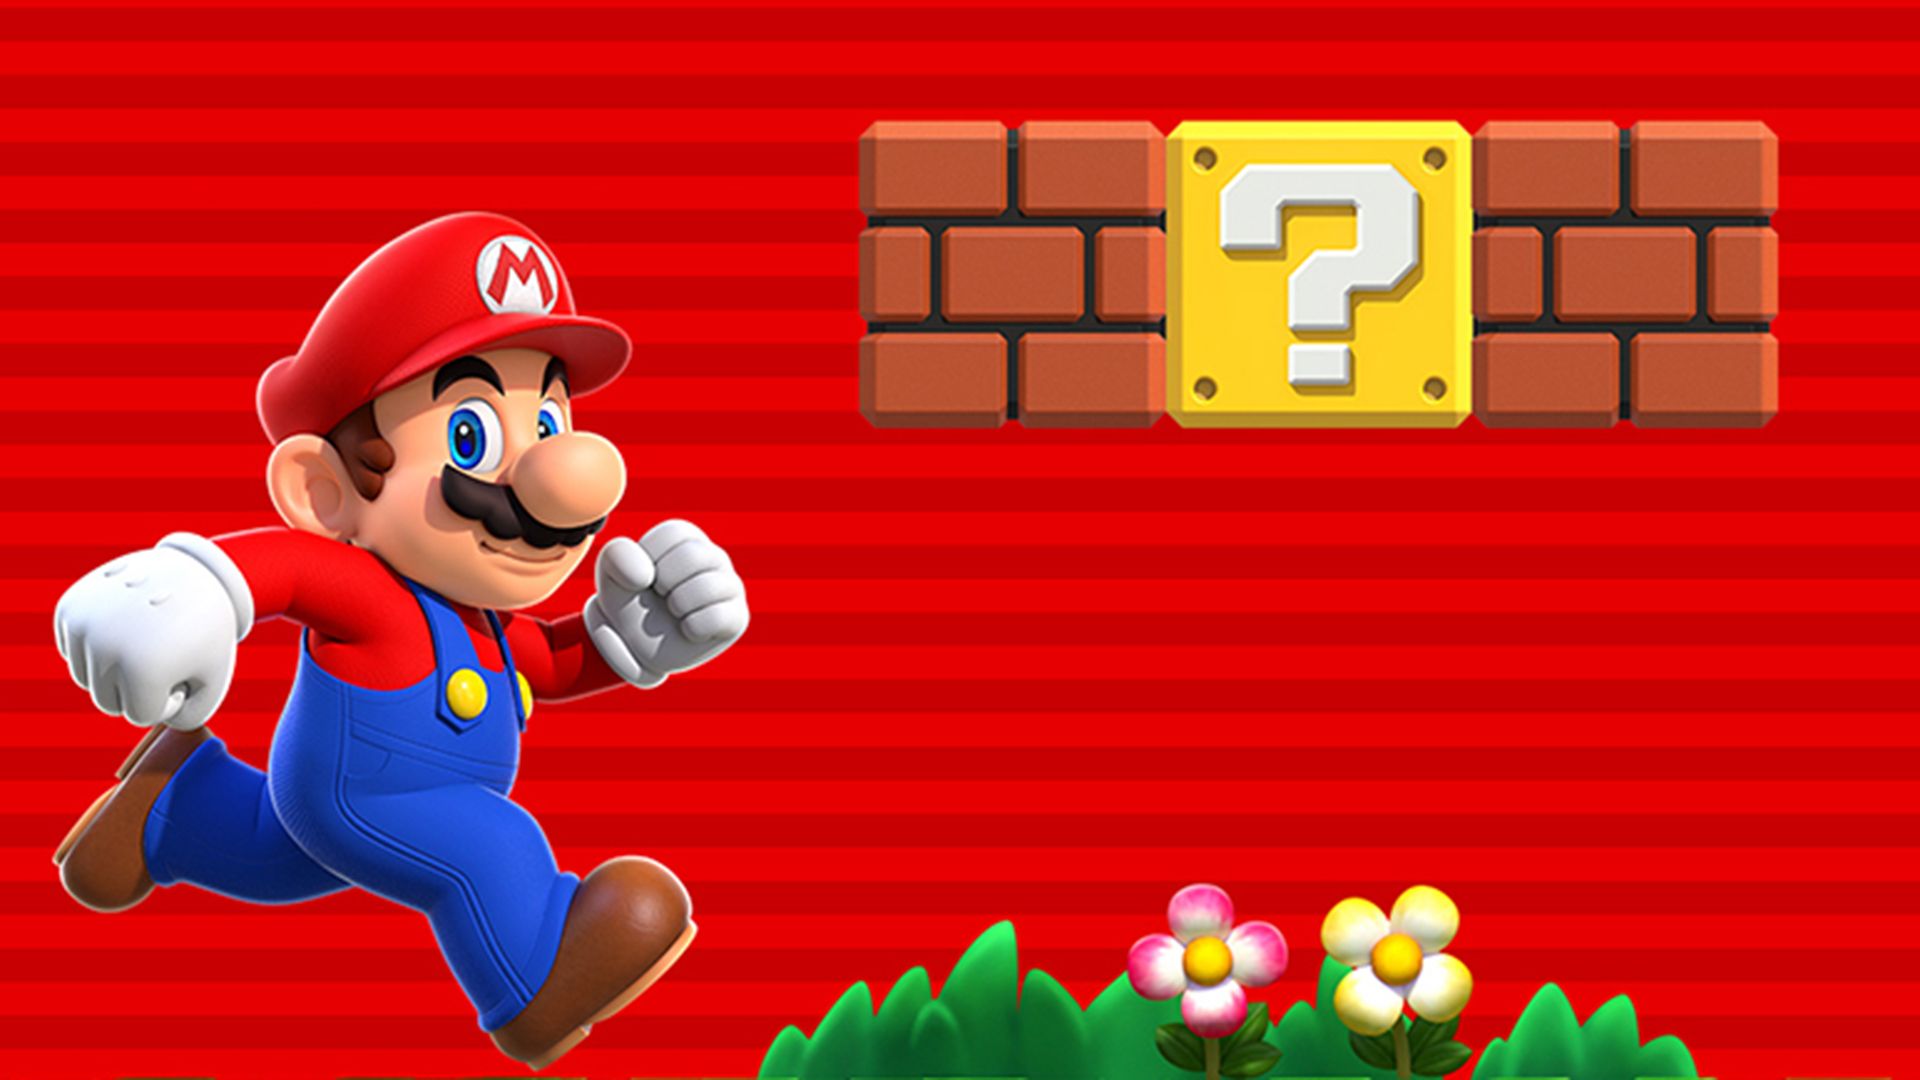 Papeis de Parede para PC: Super Mario & Zelda  Super mario run, Mario run,  Super mario games